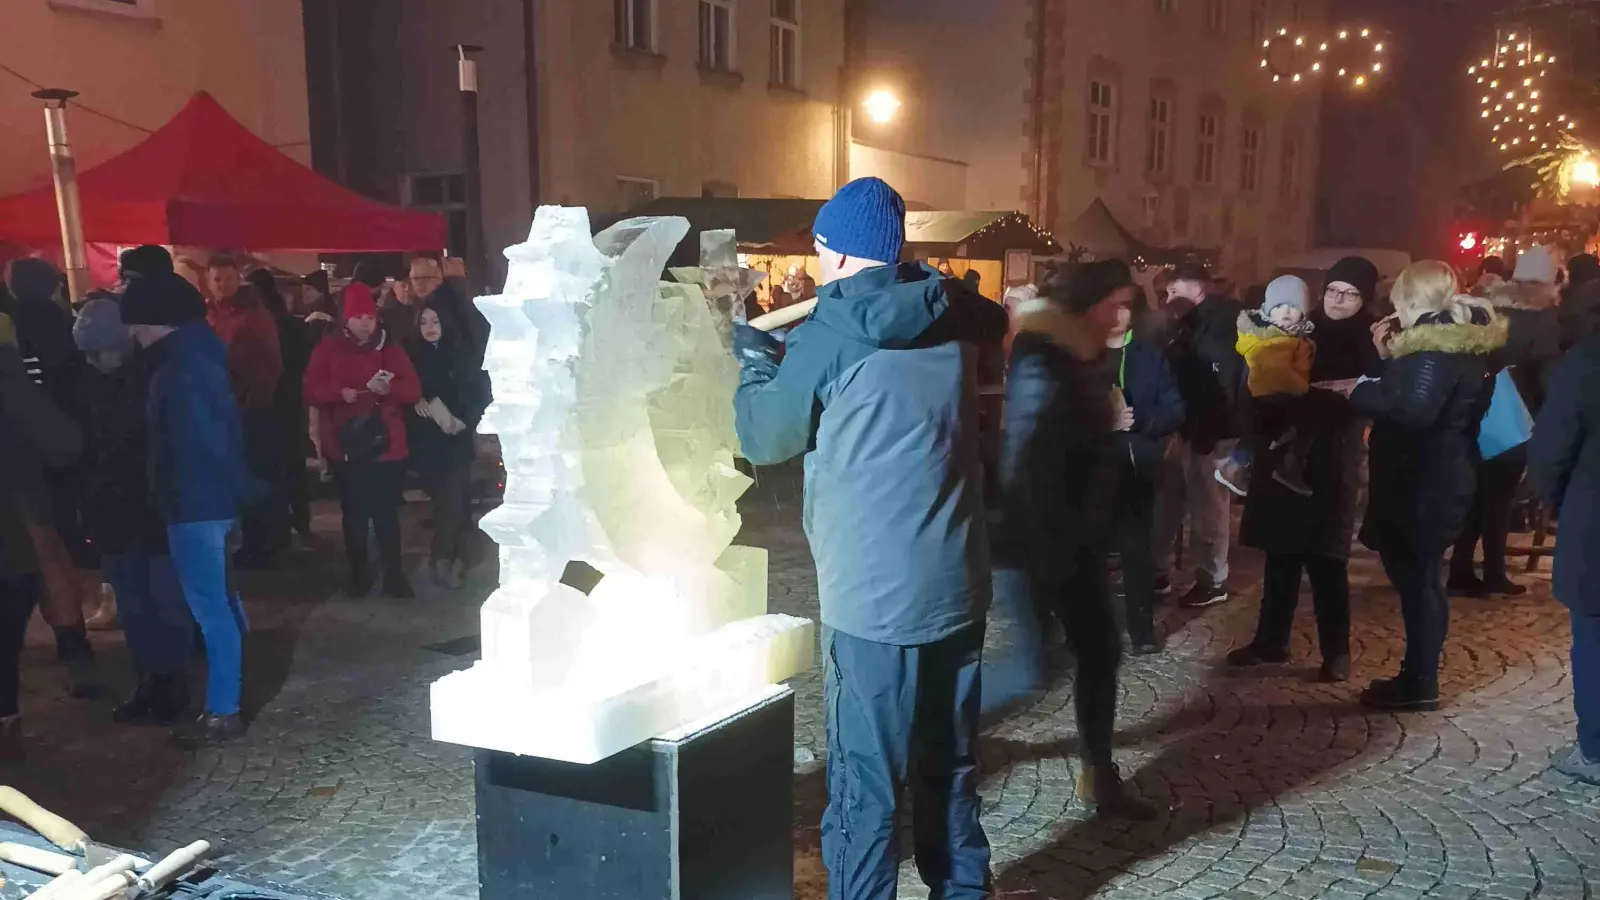 <b>Klaus Grunenberg</b>, Eiskünstler aus Baar, zauberte aus drei Eisblöcken ein weihnachtliches Motiv mit Mond und Sternen. (Foto: Wilhelm Wagner)